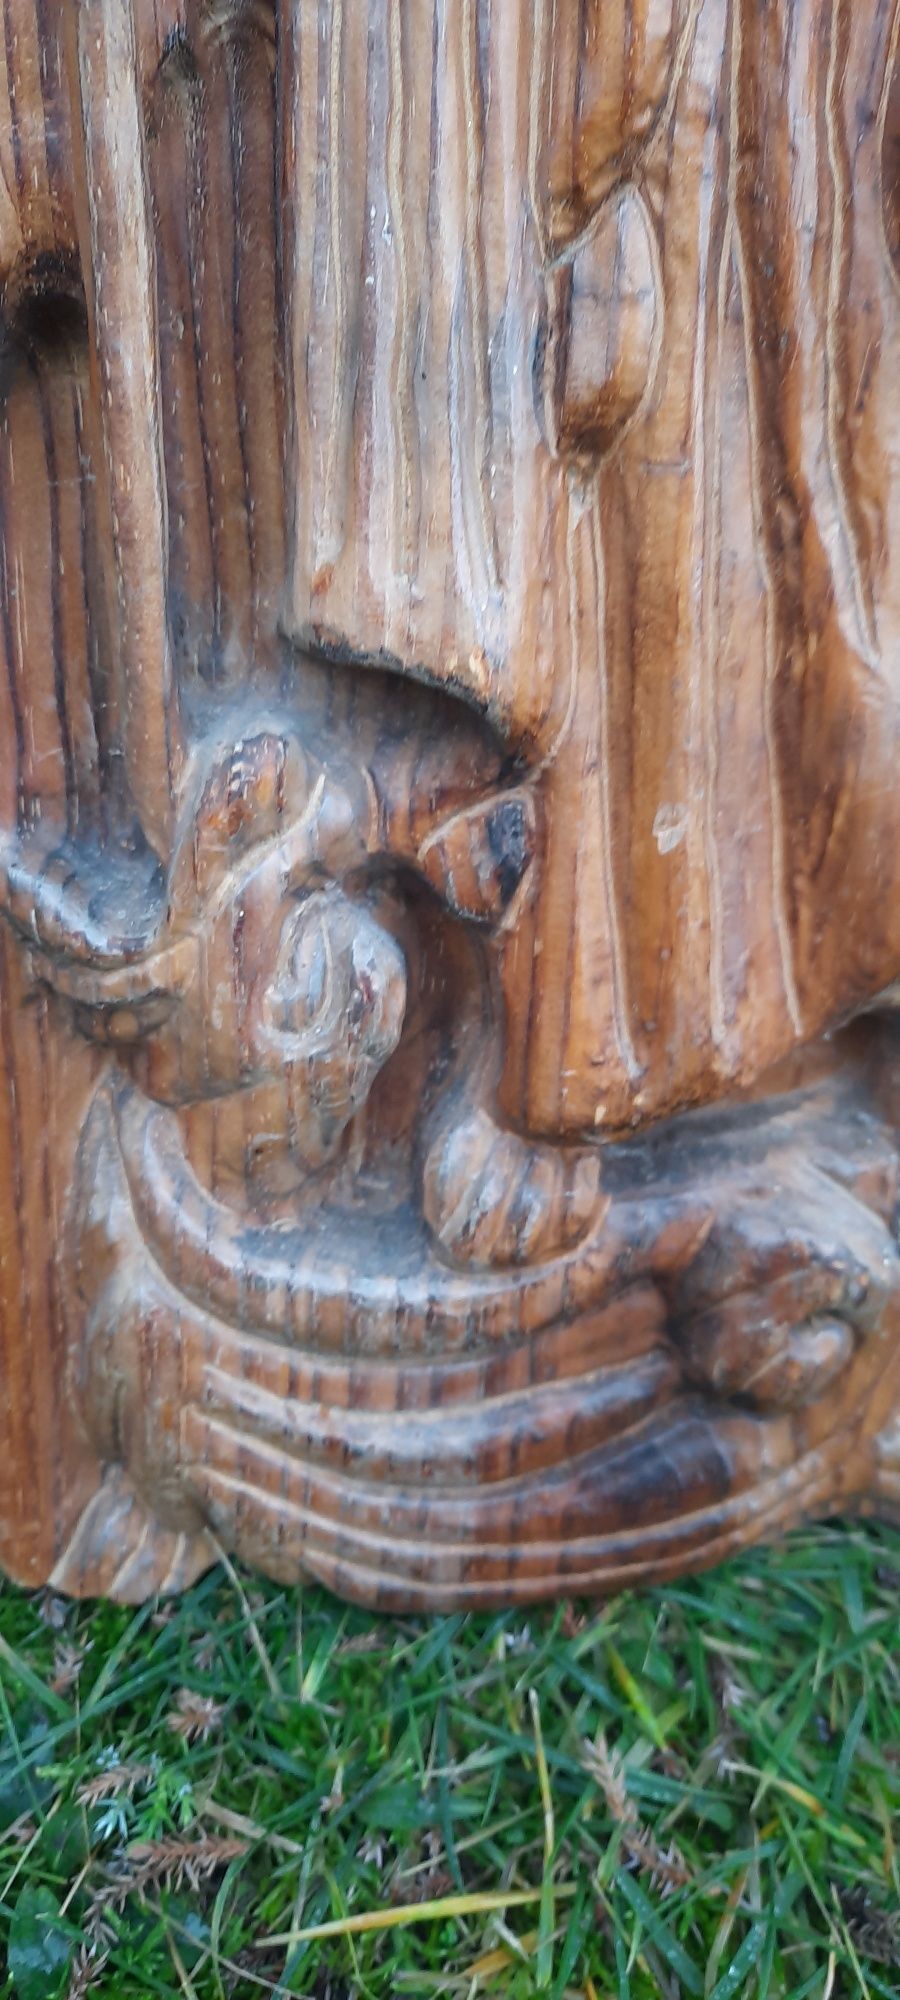 Antyk,drewno, przepiękna płaskorzeźba Świętego Jerzego lata 30-40 XX w